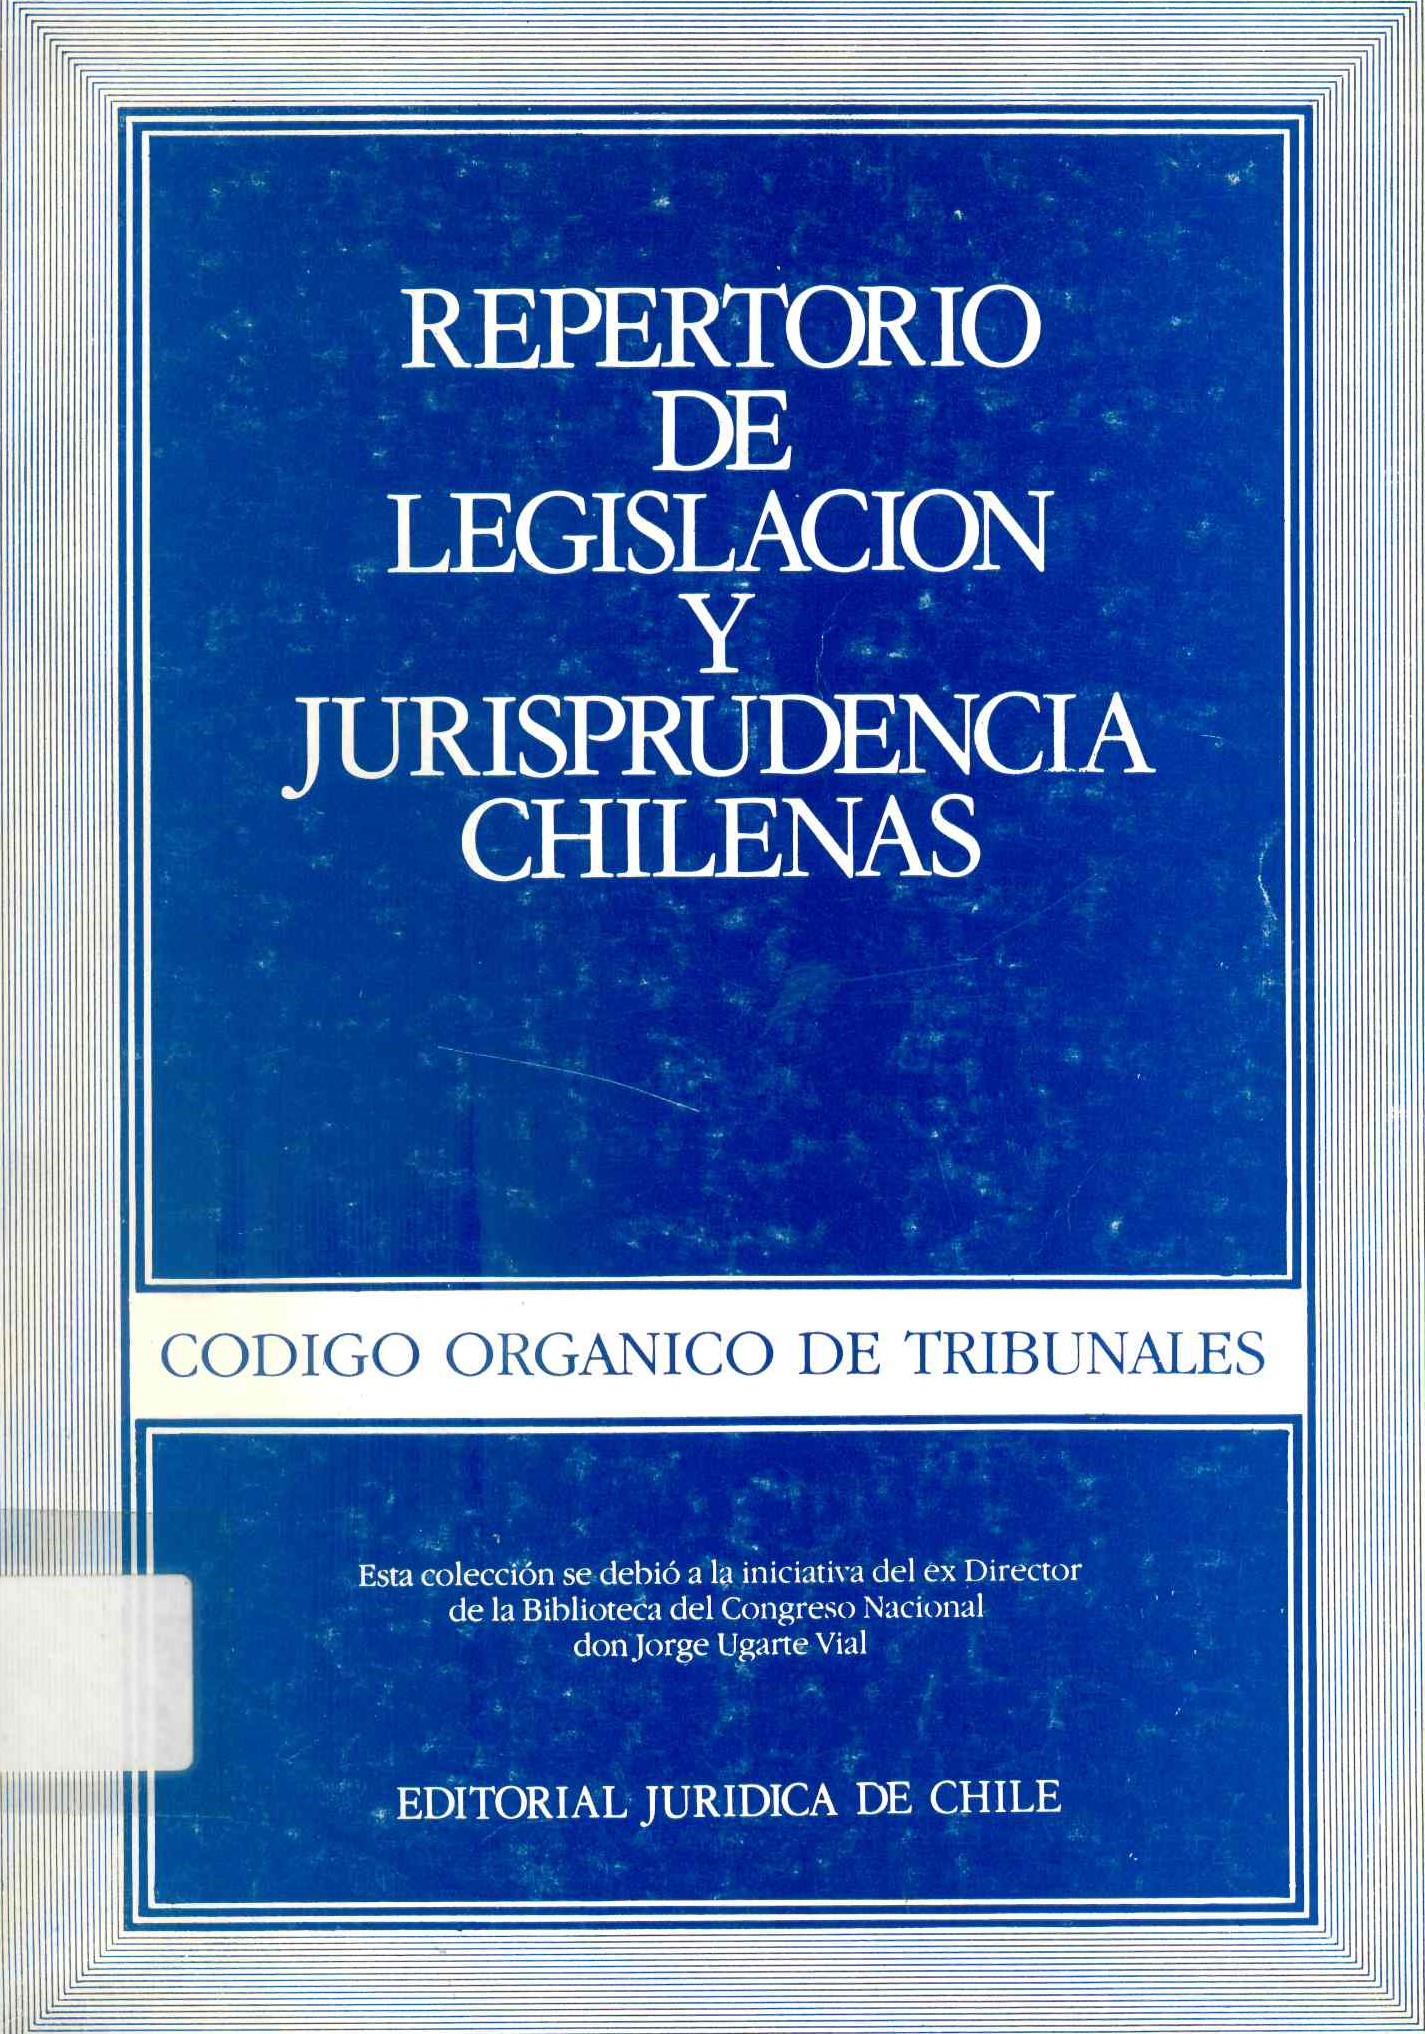 Repertorio de legislación y jurisprudencia chilenas; Código orgánico de tribunales.